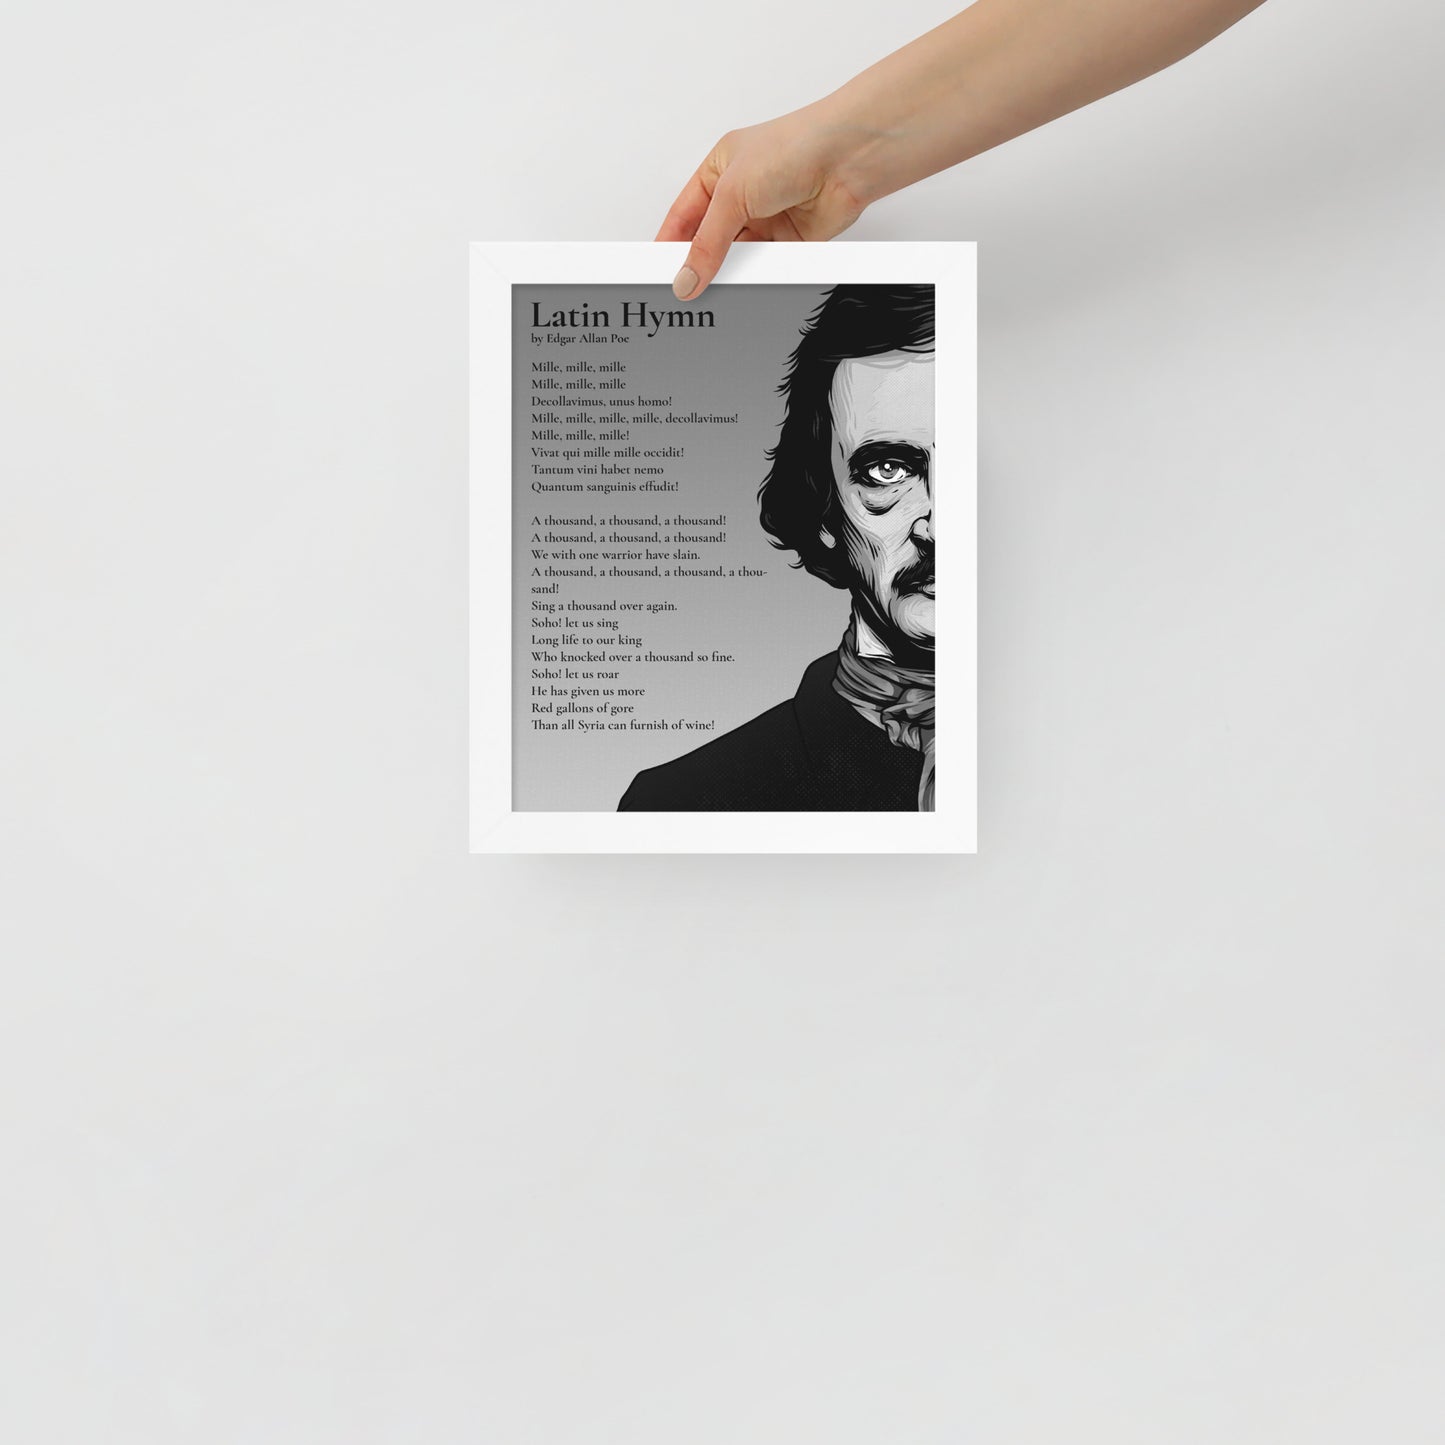 Edgar Allan Poe's 'Latin Hymn' Framed Matted Poster - 8 x 10 White Frame